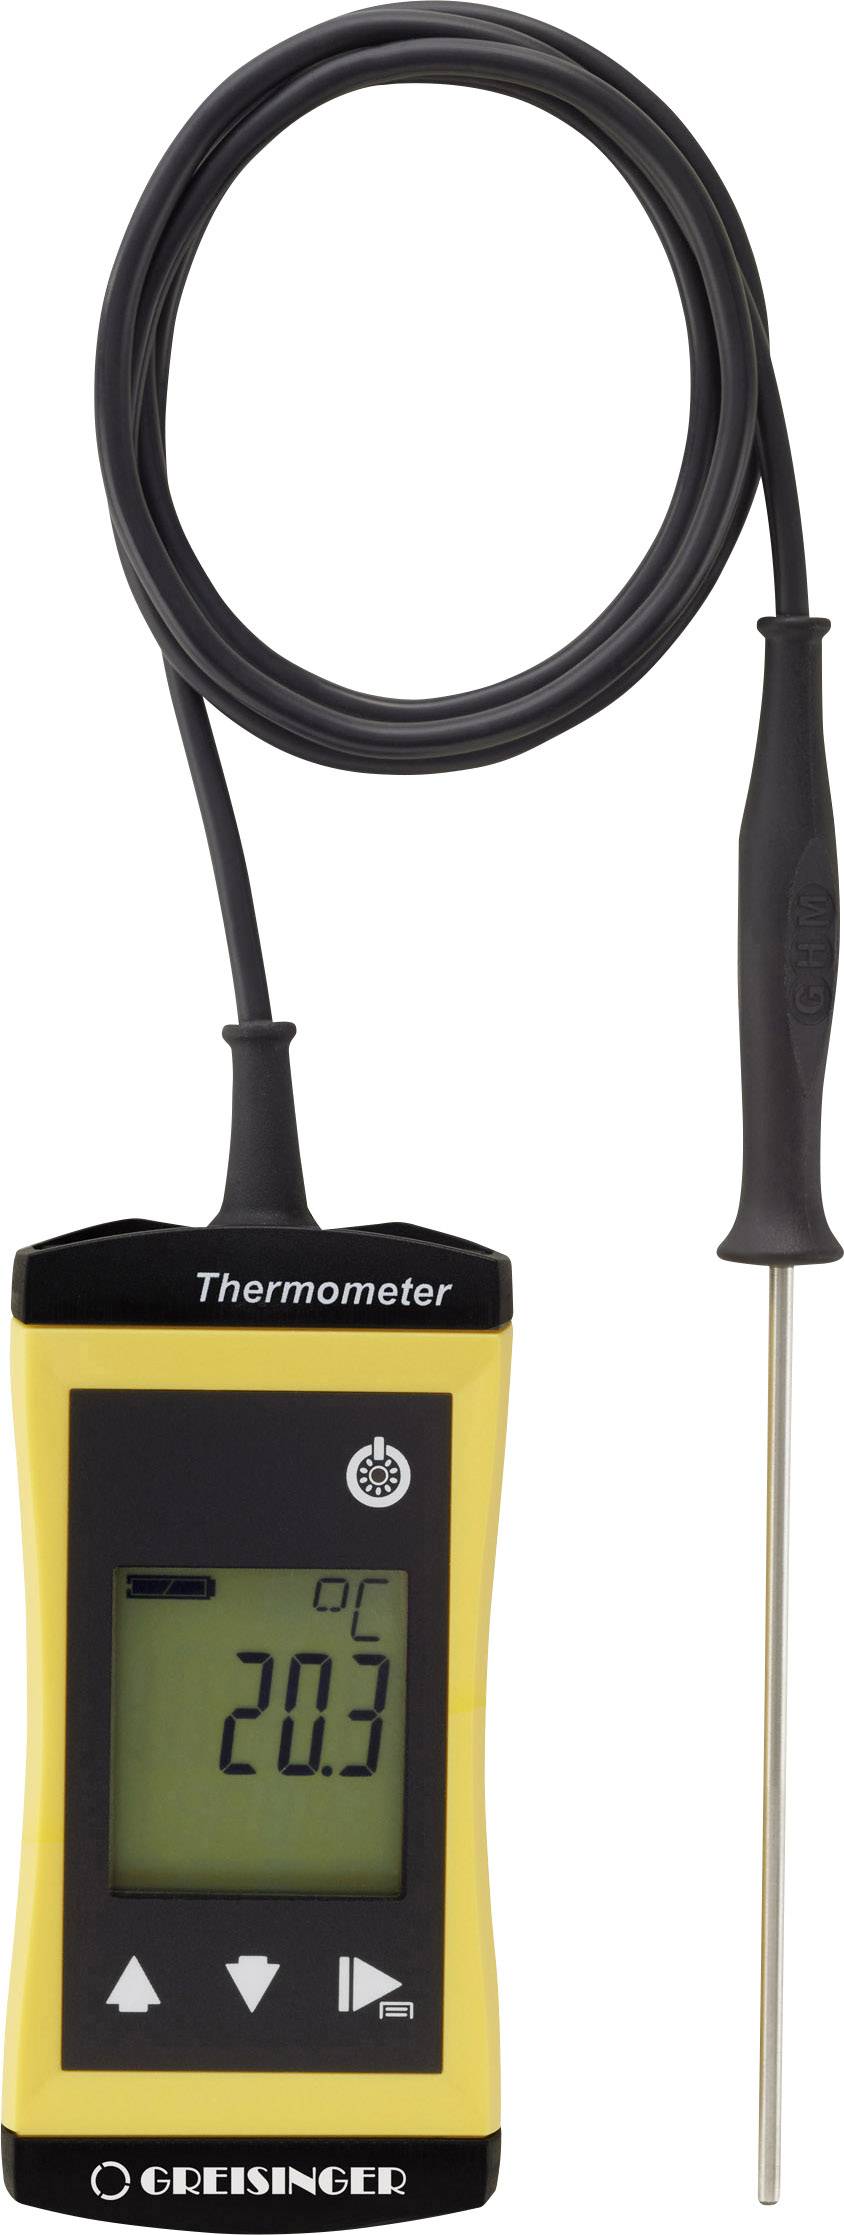 Digitalthermometer Bratenthermometer mit Tauchfühler Greisinger G 1710 ORIGINAL 